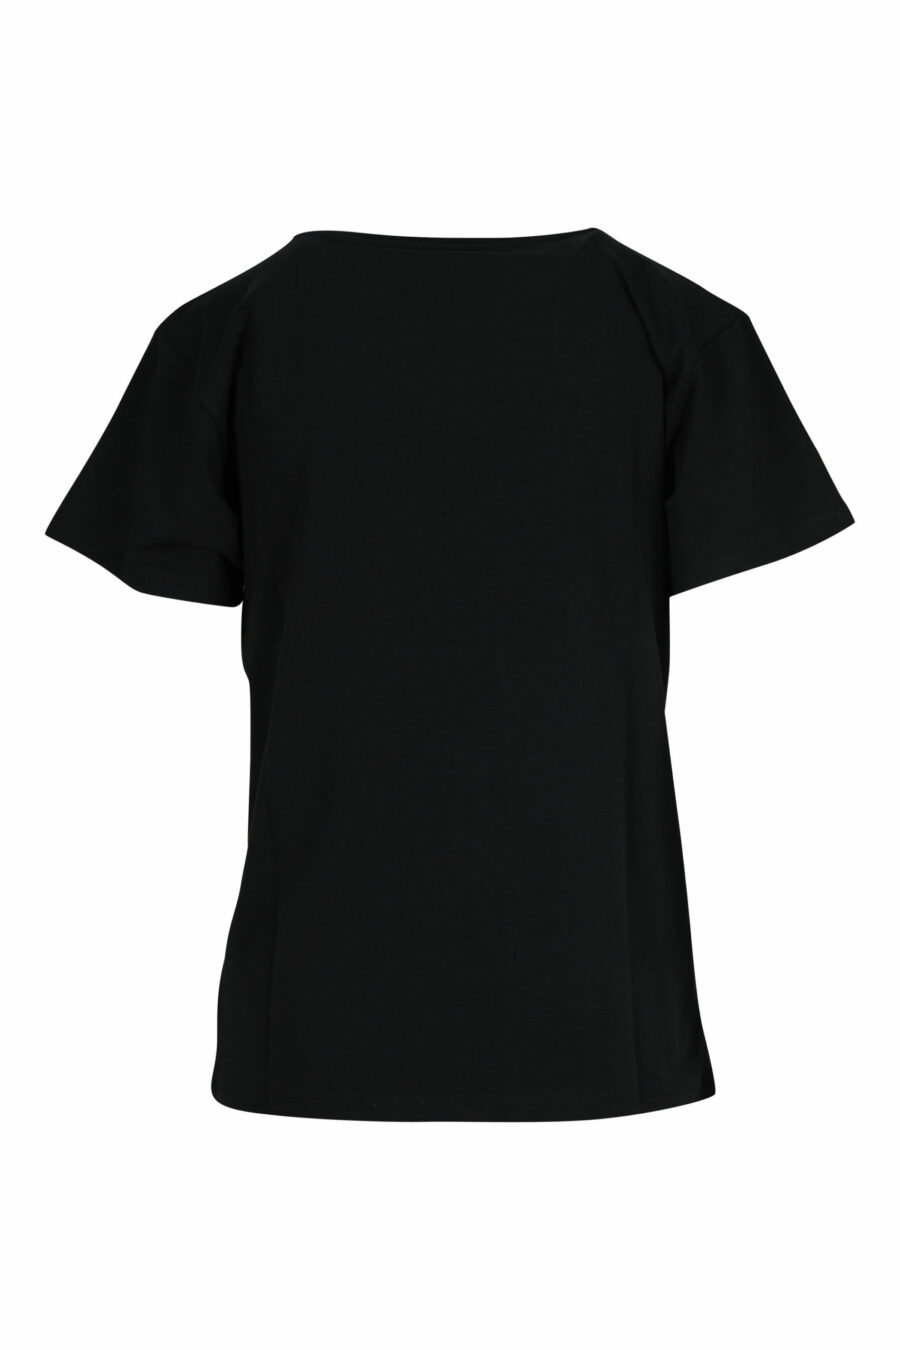 T-shirt preta com minilogo de urso branco - 667113355306 1 à escala